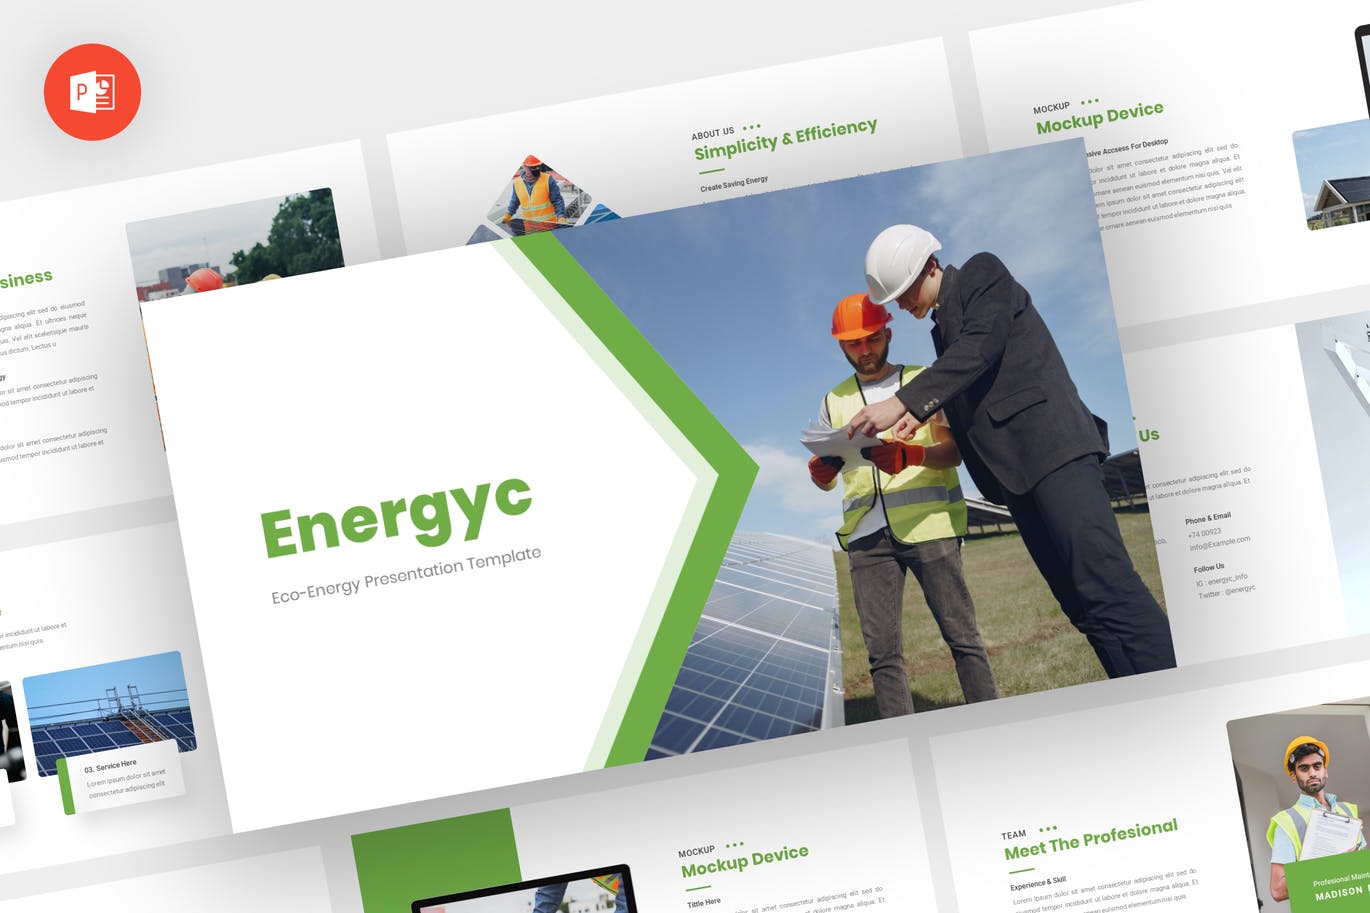 环保生态能源PPT素材 Energyc – Eco Energy Powerpoint Template 幻灯图表 第1张